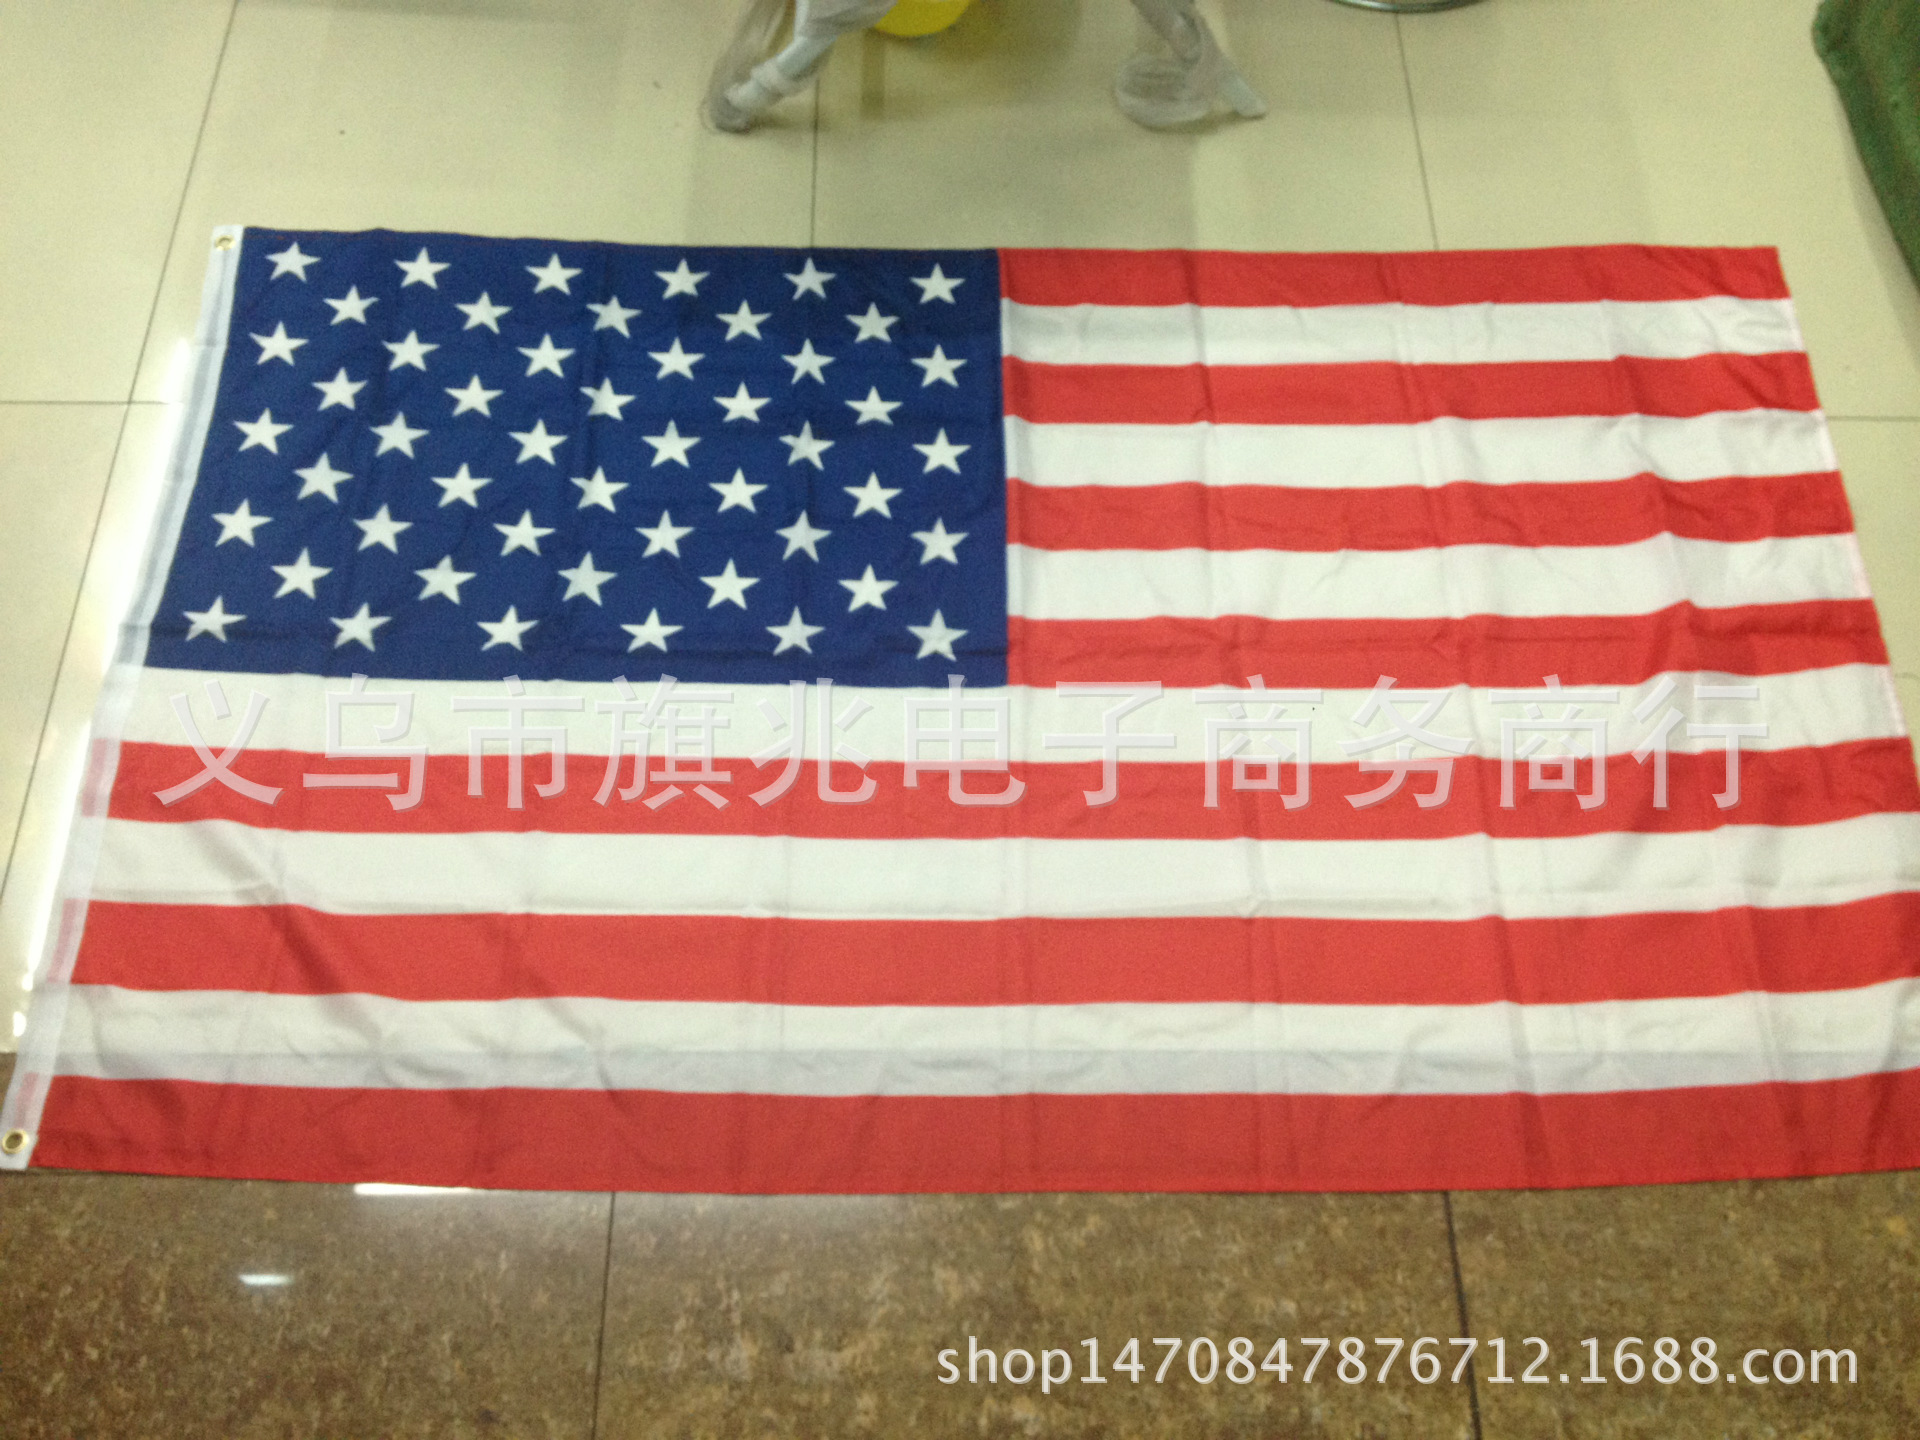 美国国旗 美国星条旗 生产与销售 厂家直销产品图